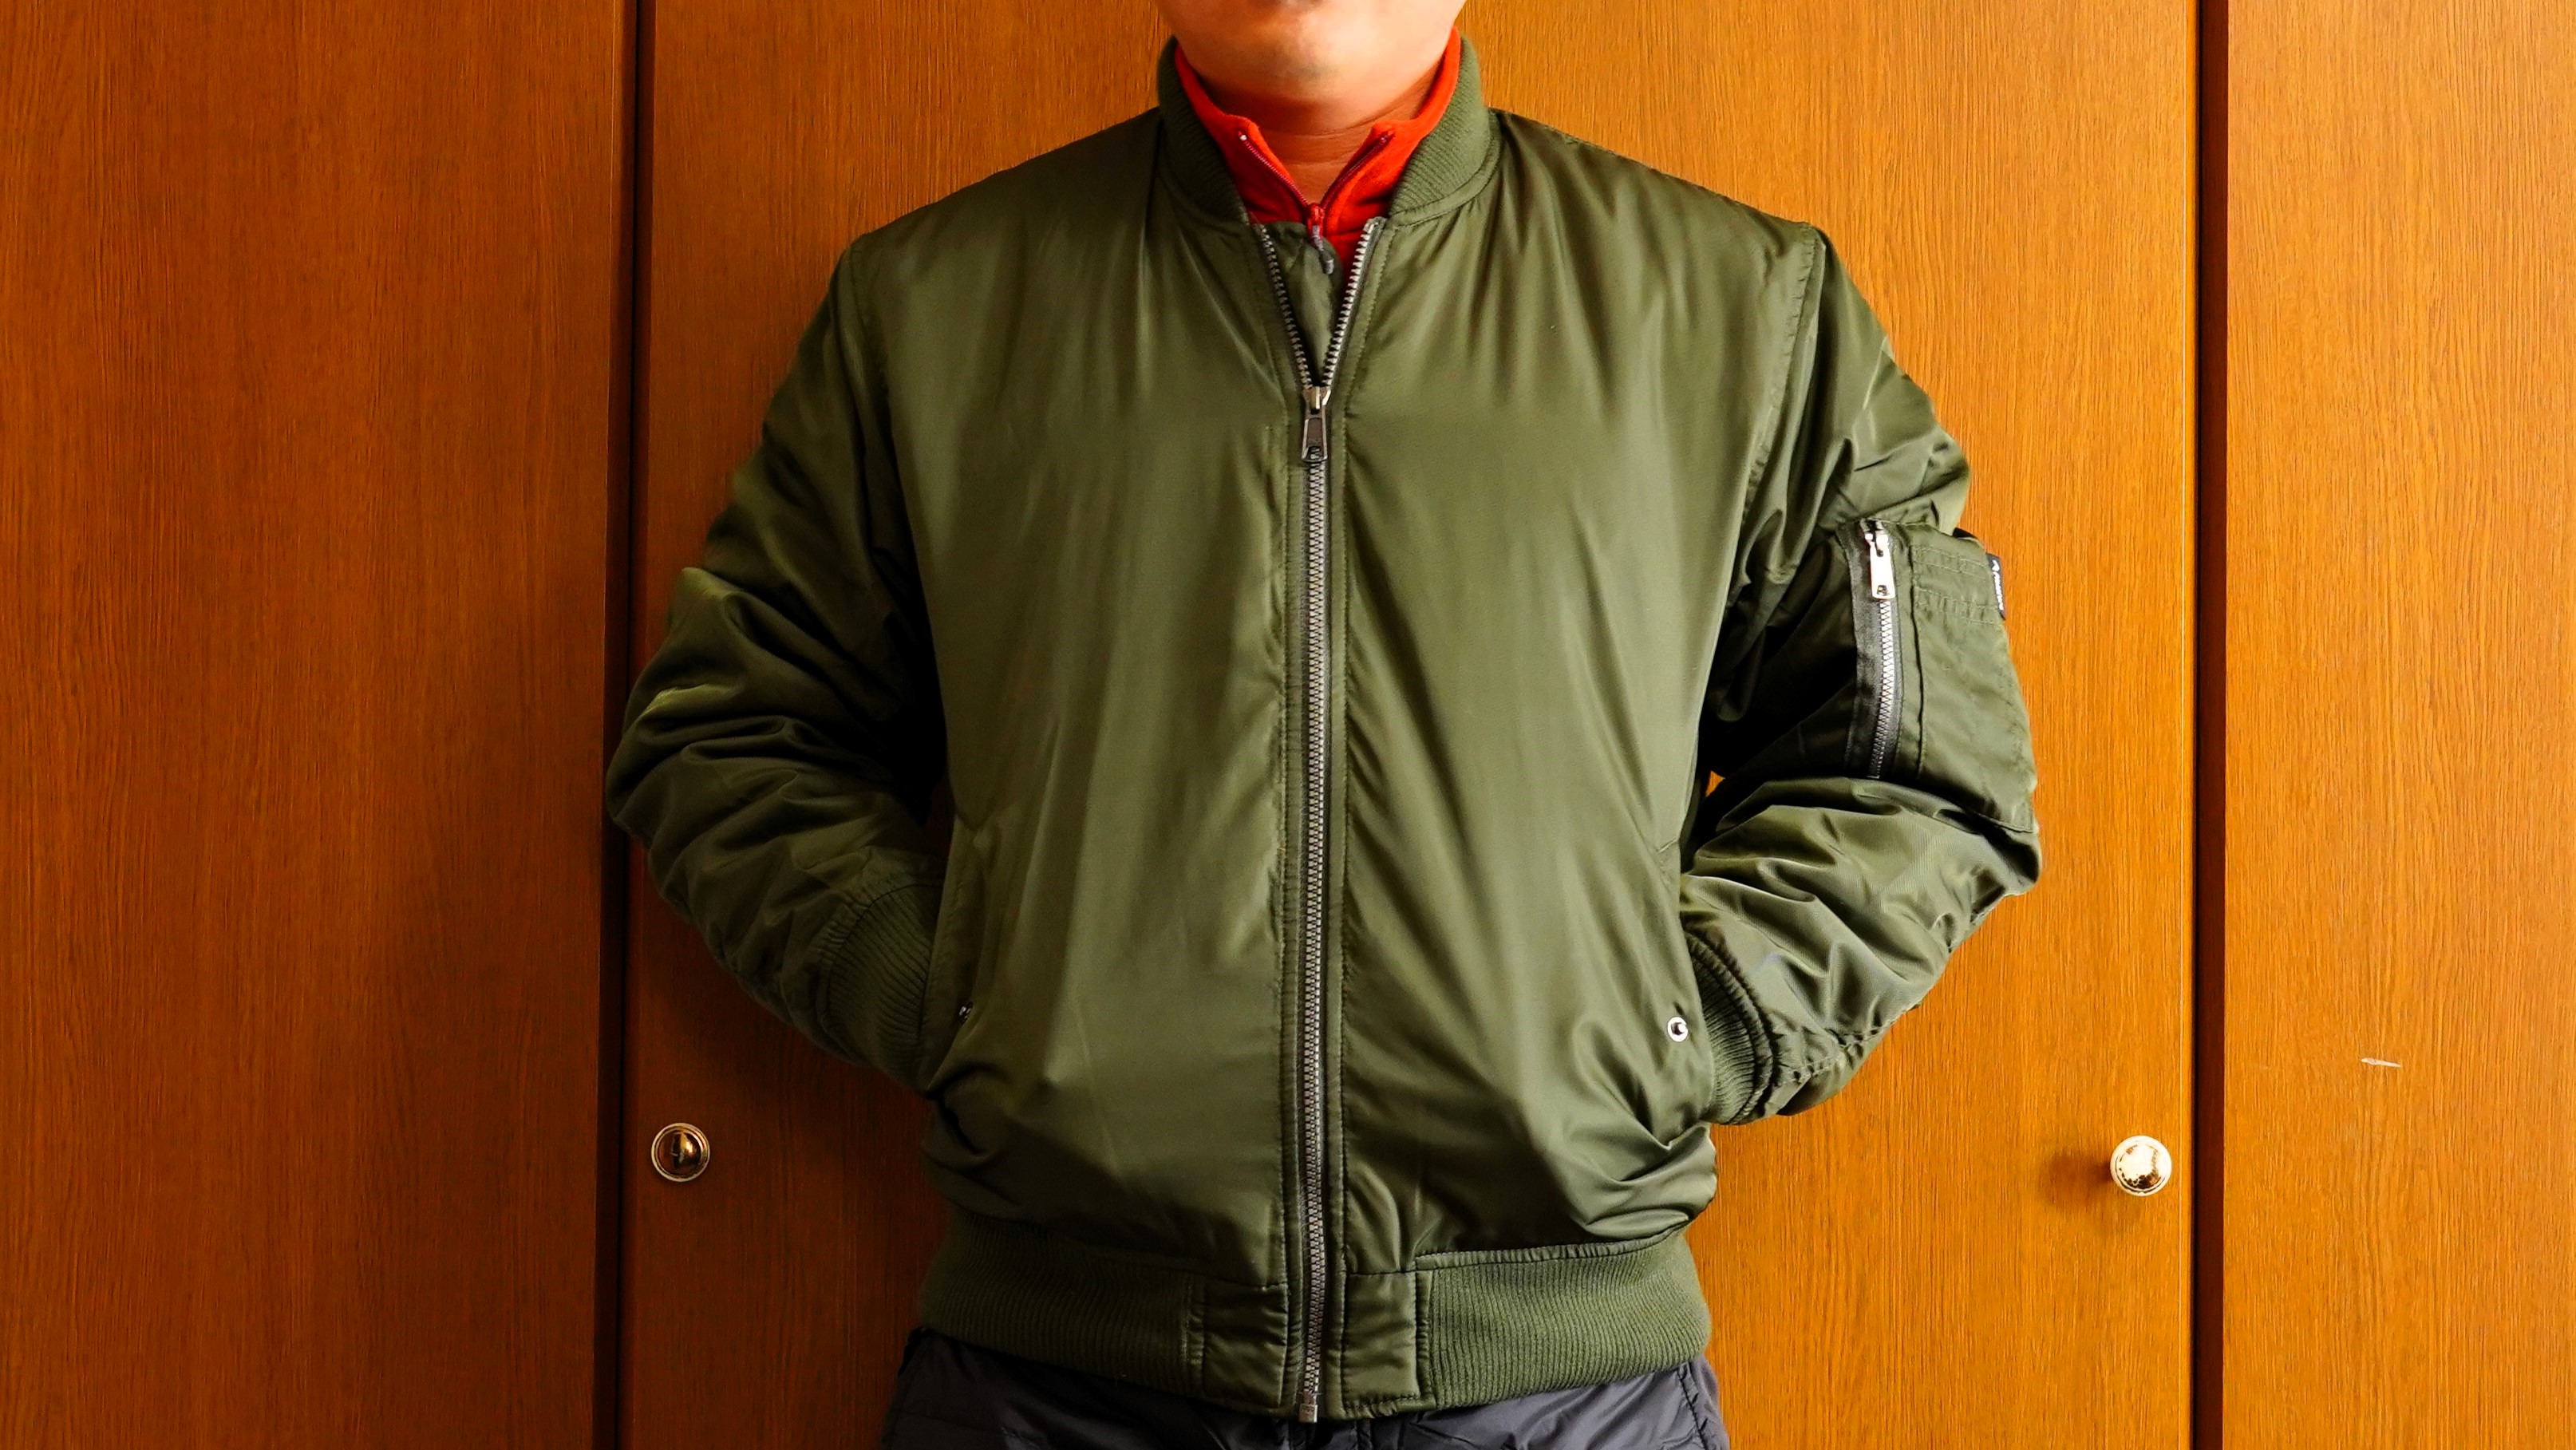 ワークマンの2,900円の裏アルミMA-1タイプジャンパーは外出できる部屋着として便利